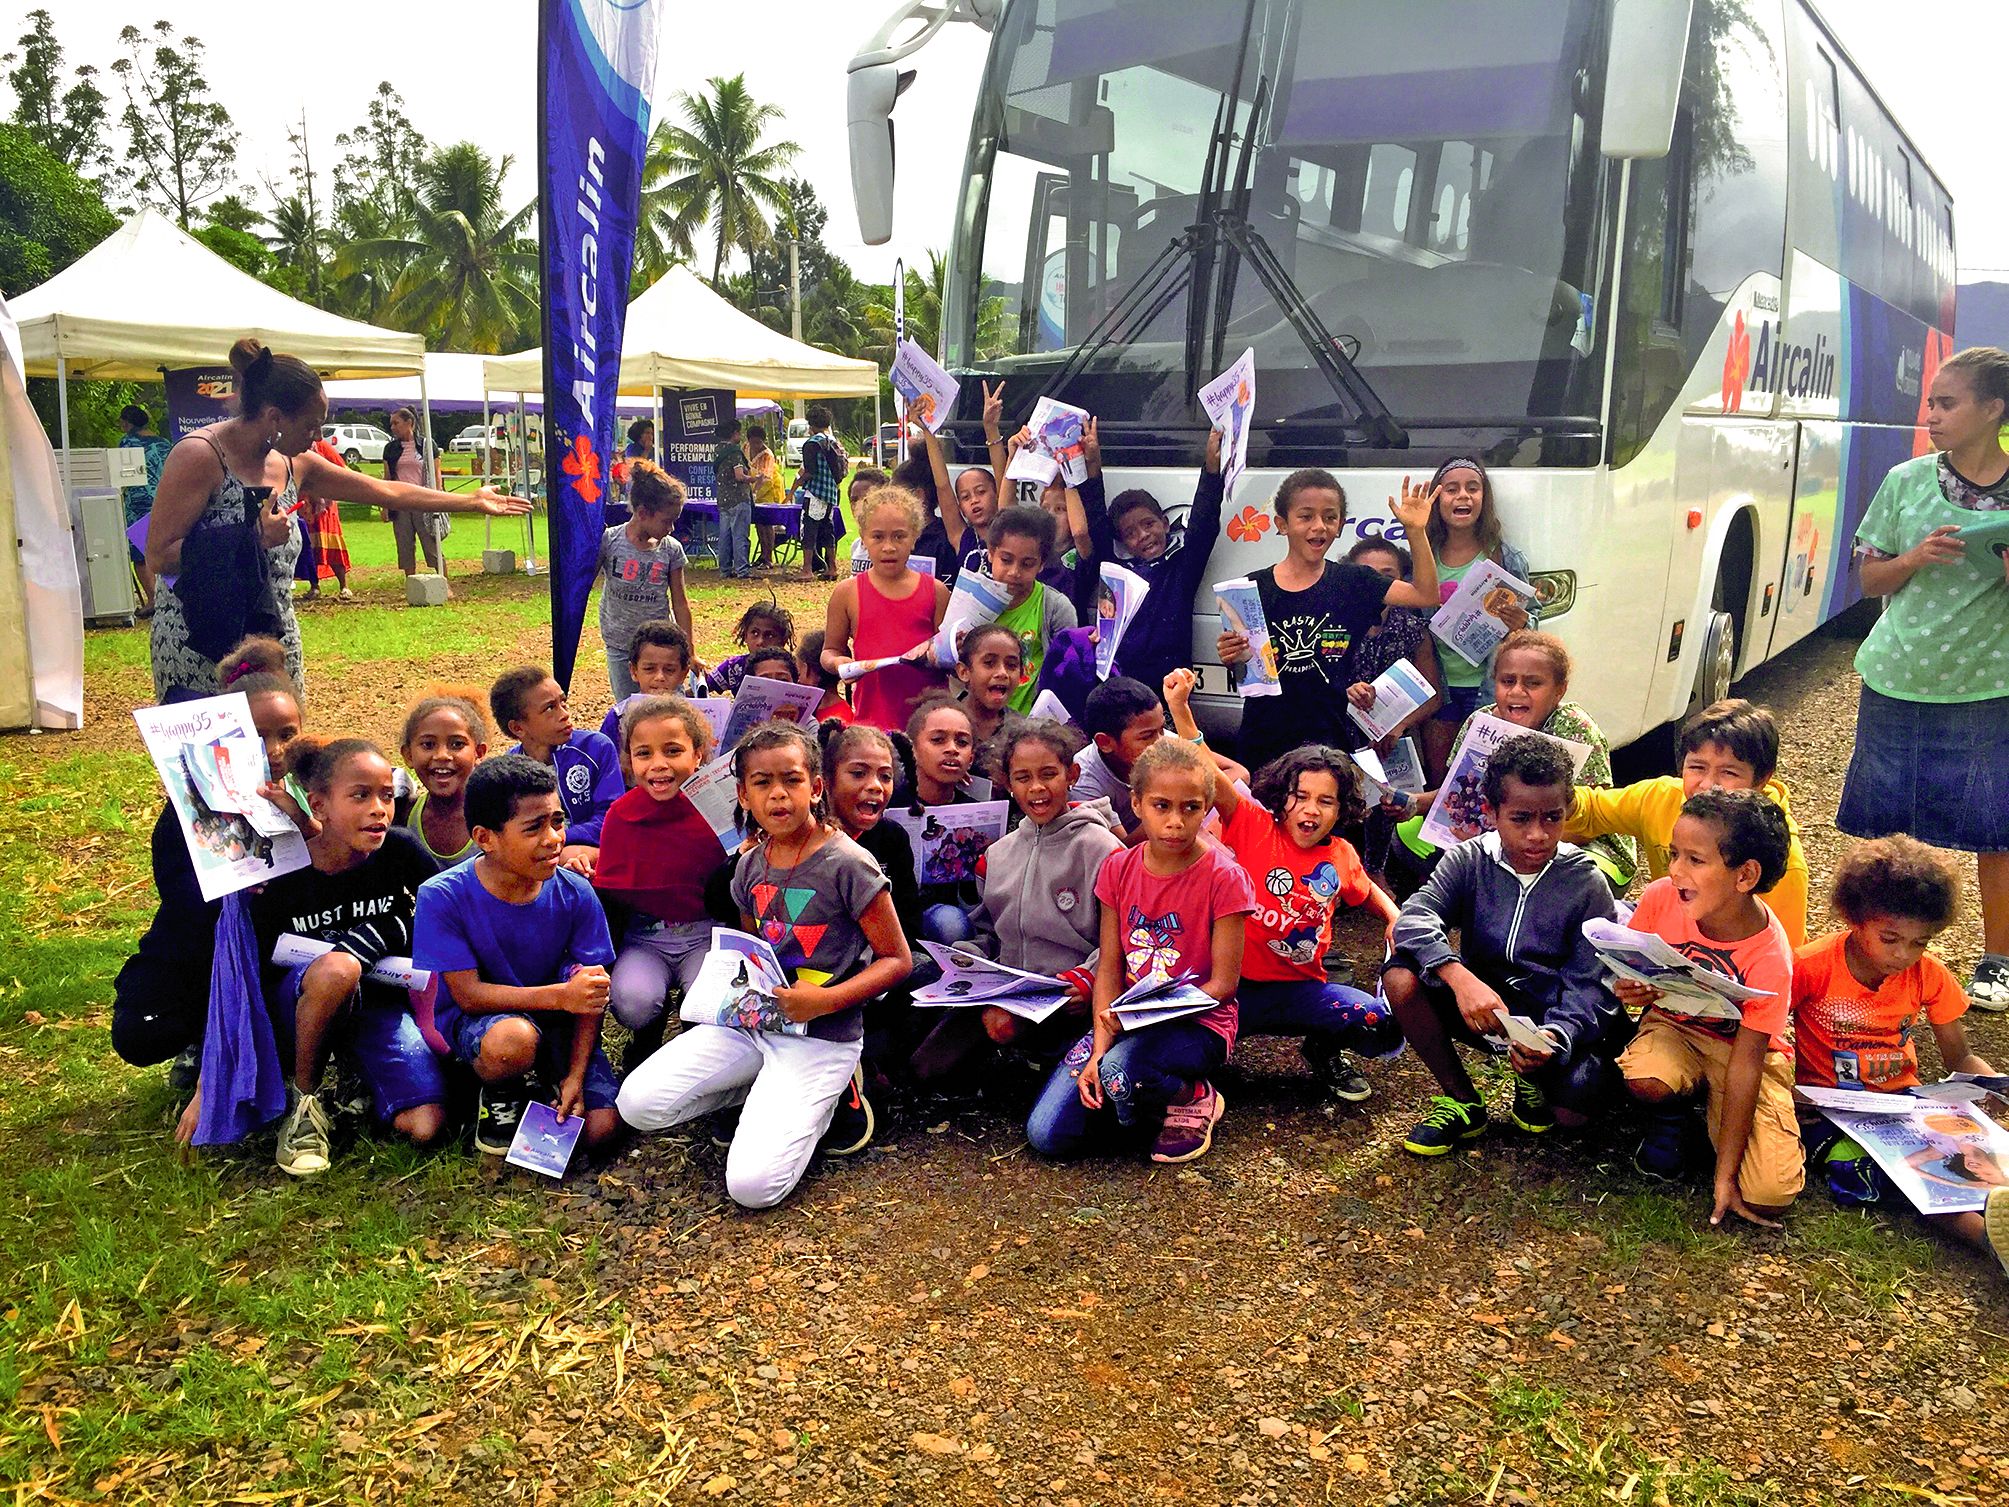 Des écoliers de Canala devant le bus Aircalin mardi. Jeux et cadeaux étaient au programme.Photos : Aircalin